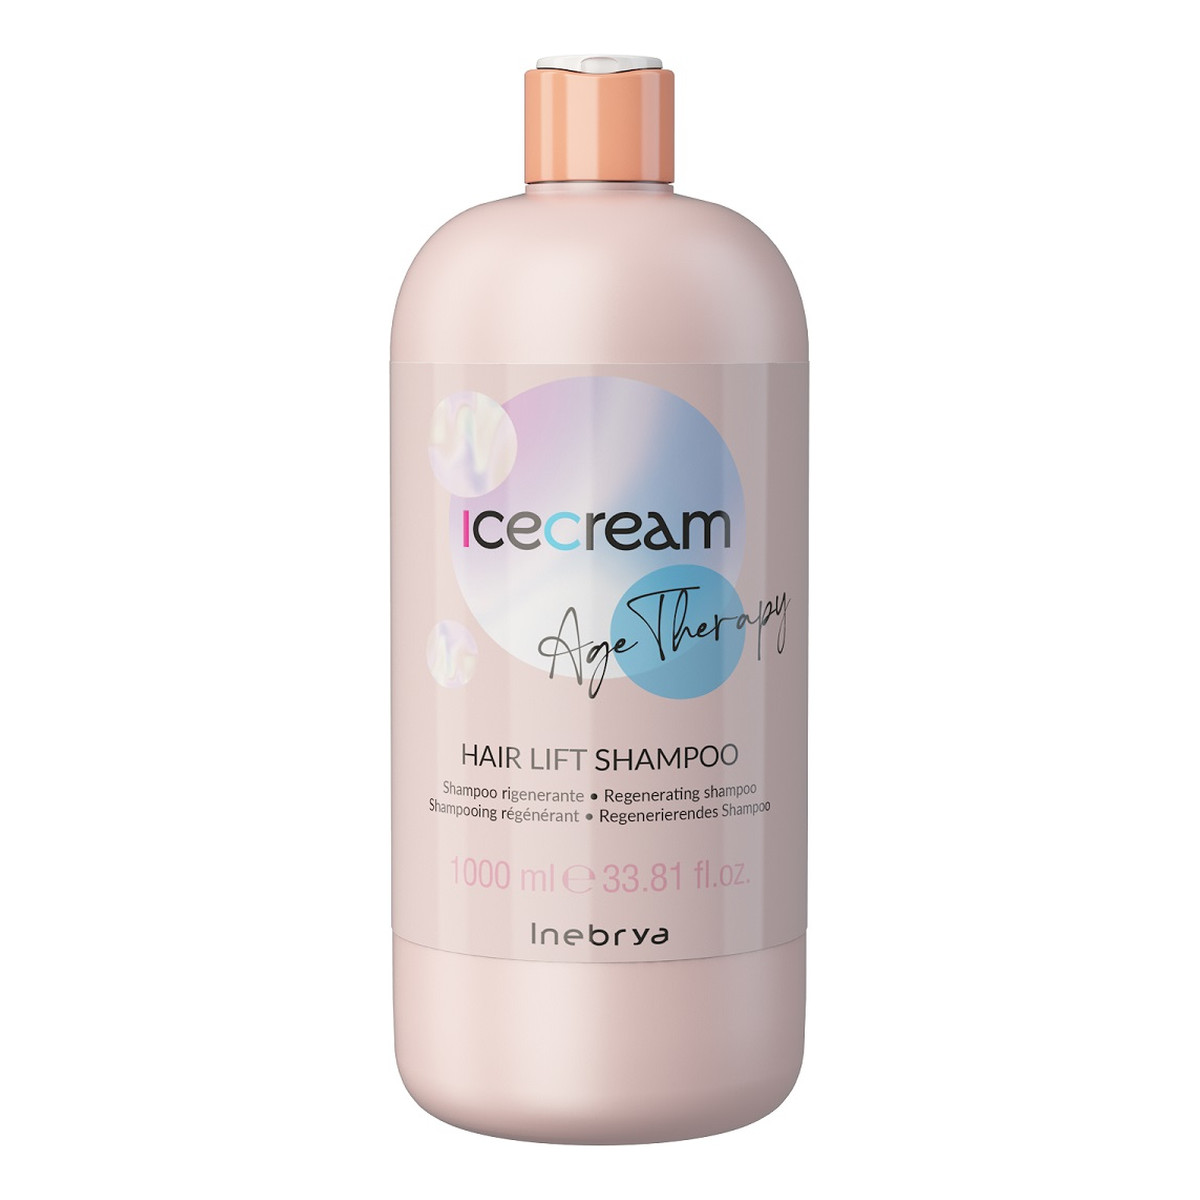 Inebrya Age therapy hair lift shampoo regenerujący szampon do włosów 1000ml